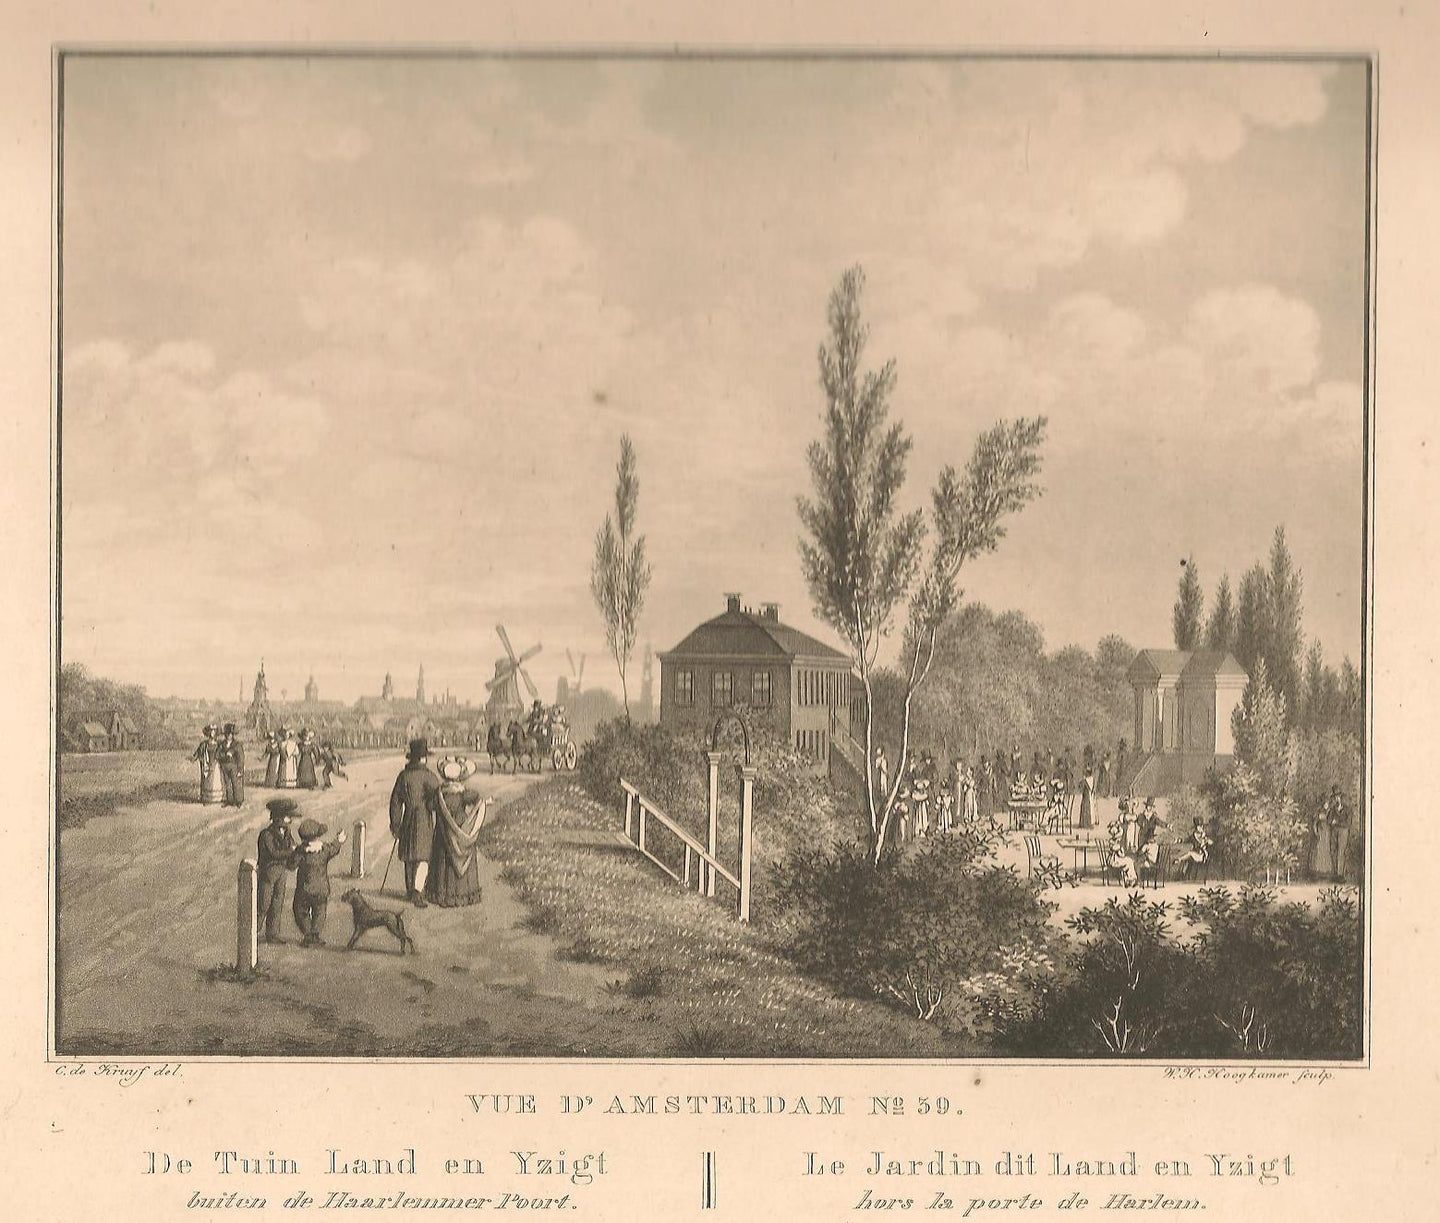 Amsterdam Spaarndammerdijk Land en Yzigt - C de Kruyff / F Buffa - 1825